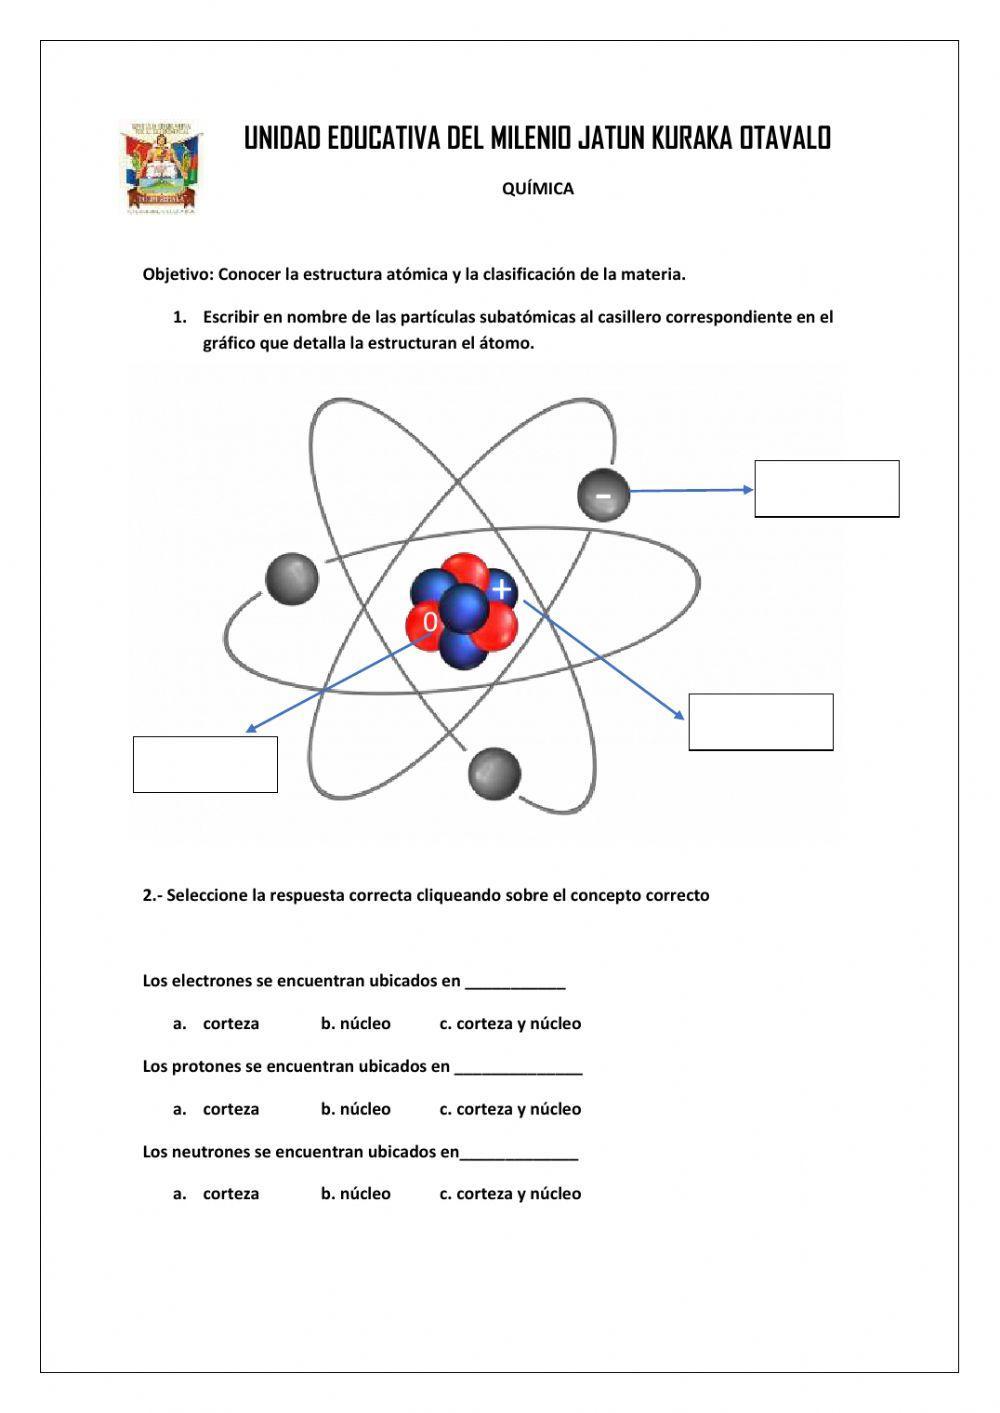 Estructura Atómica y clasificación de la materia